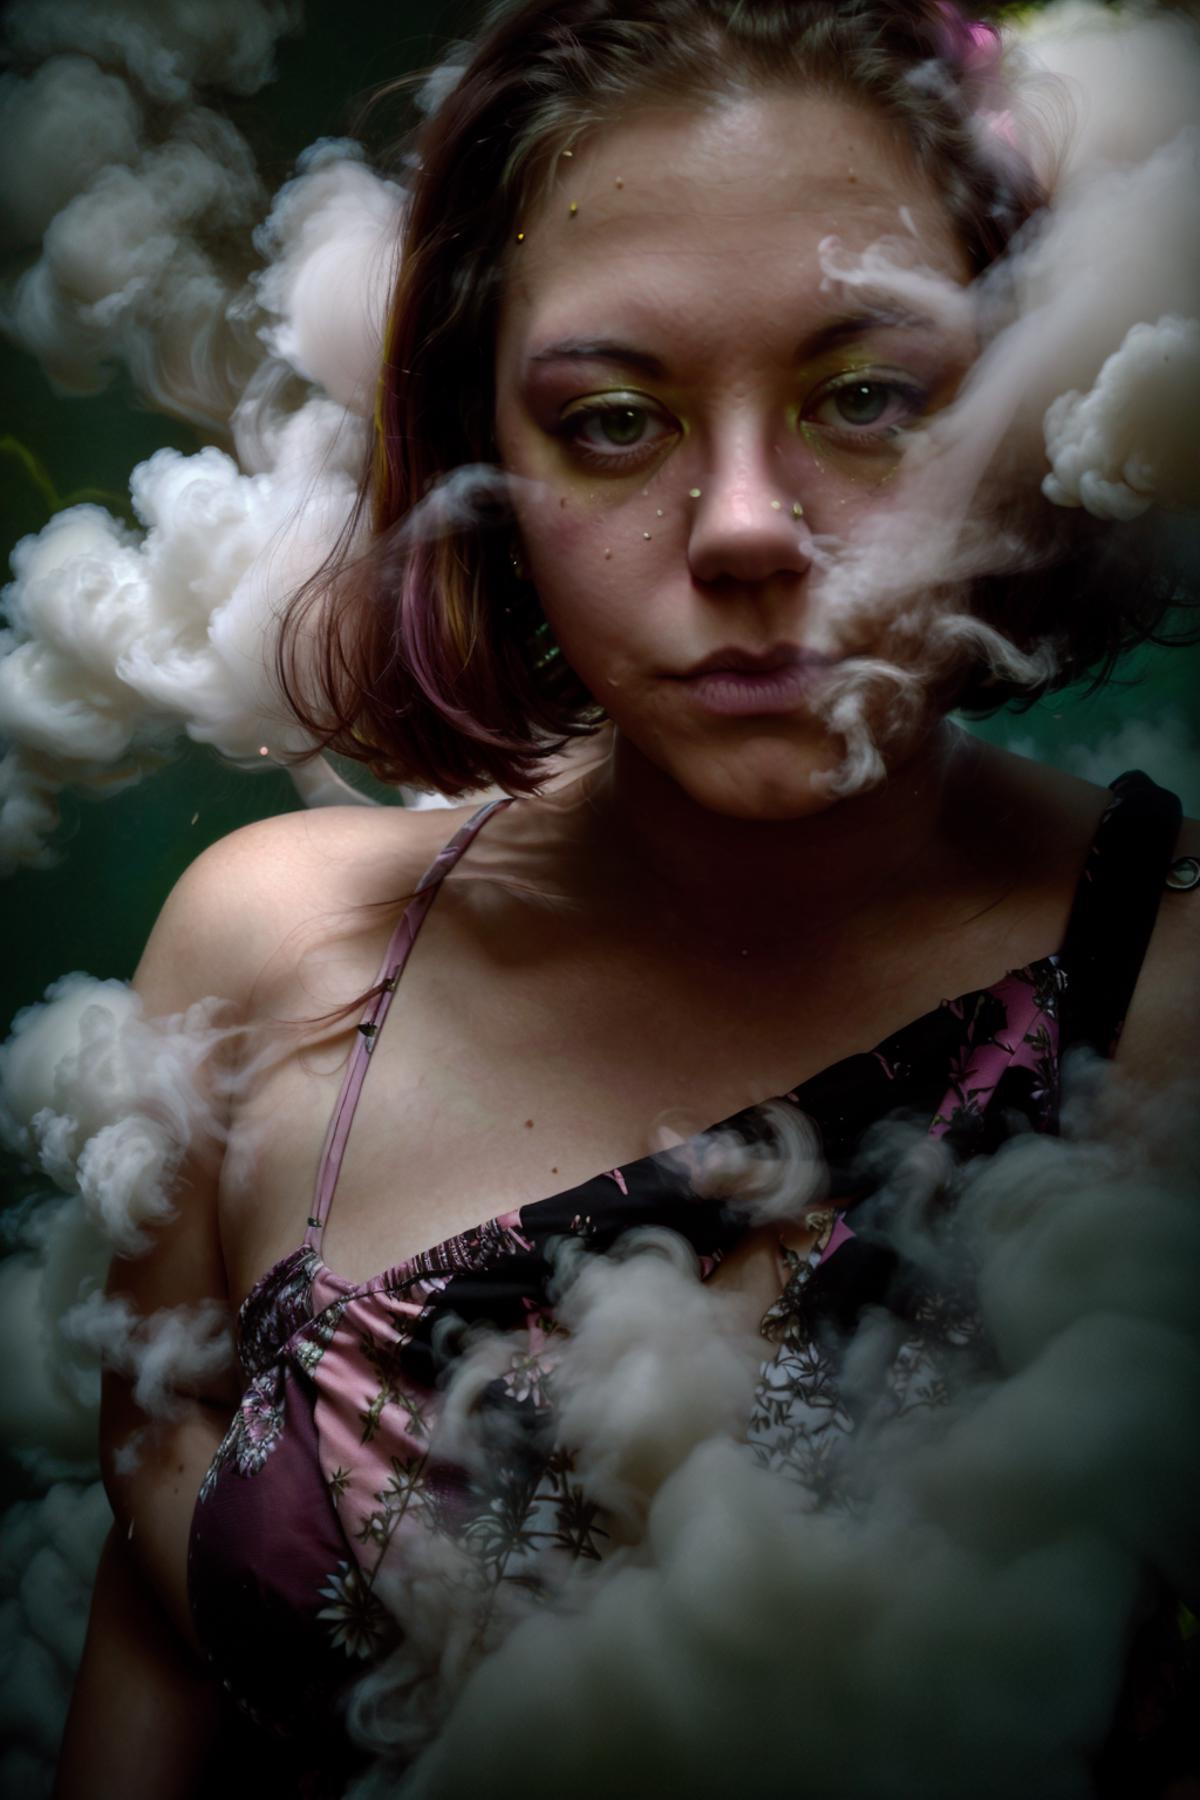 Puffy Smoke image by Rasali